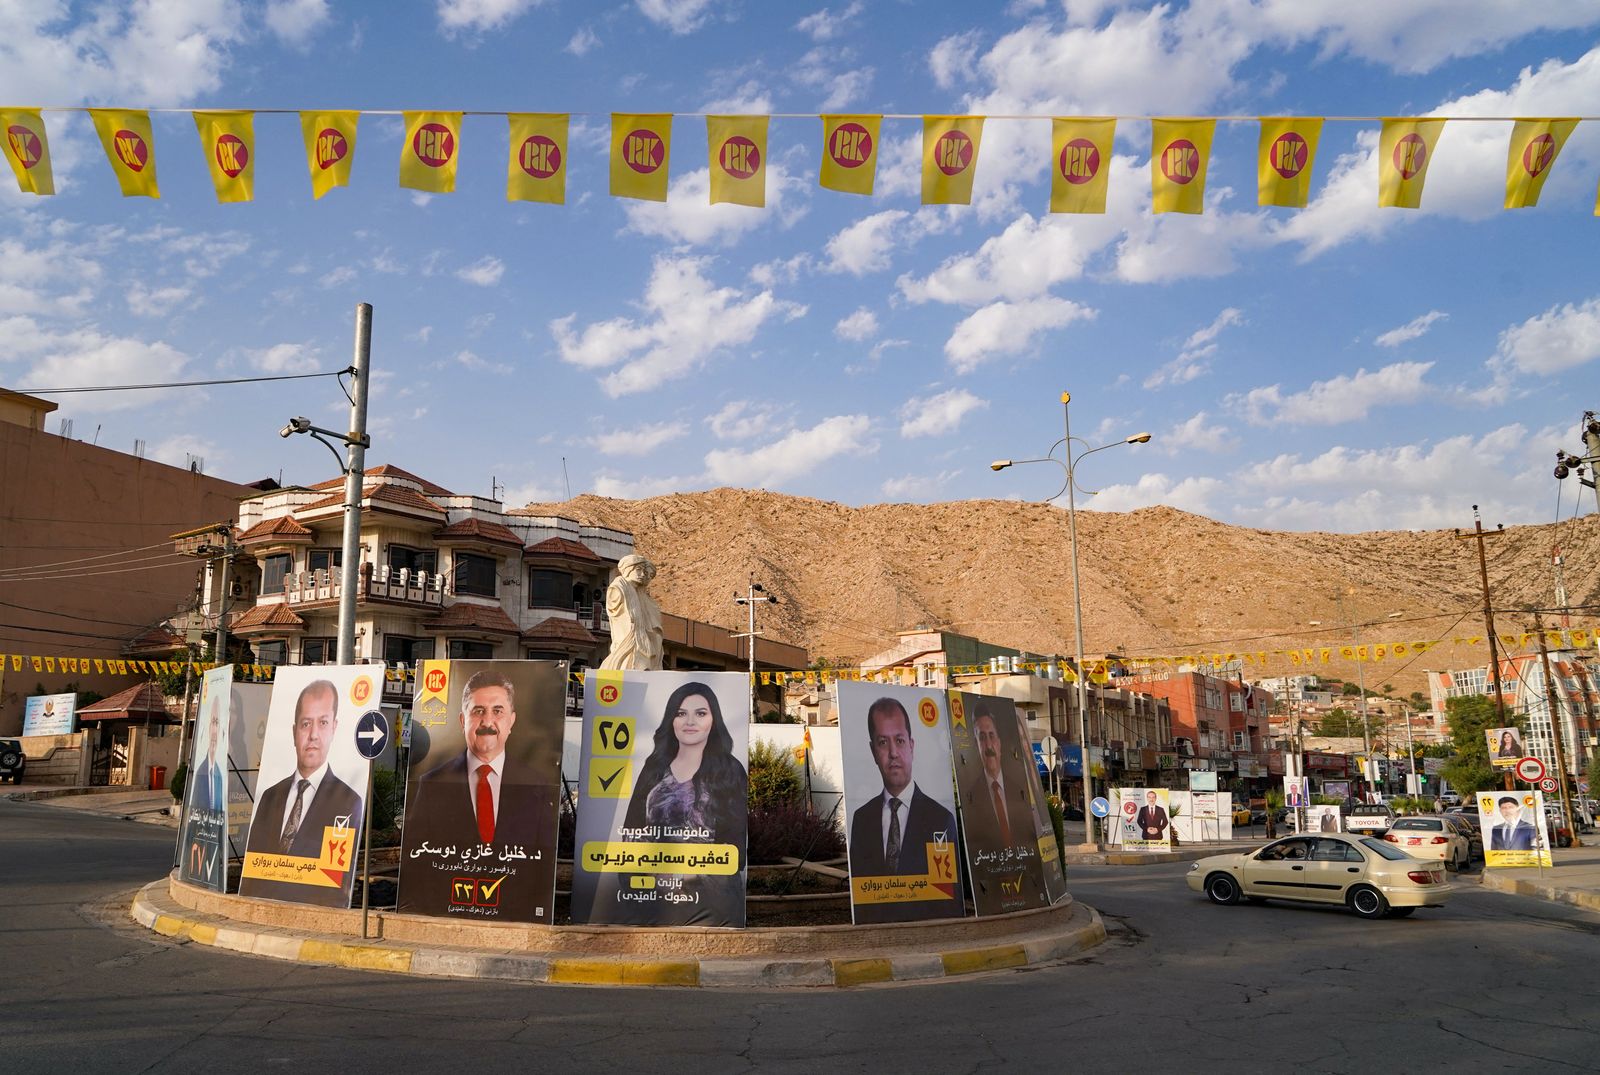 لافتات إعلانية للمرشحين للانتخابات التشريعية المقبلة في مدينة دهوك شمال العراق- 3 أكتوبر 2021 - AFP